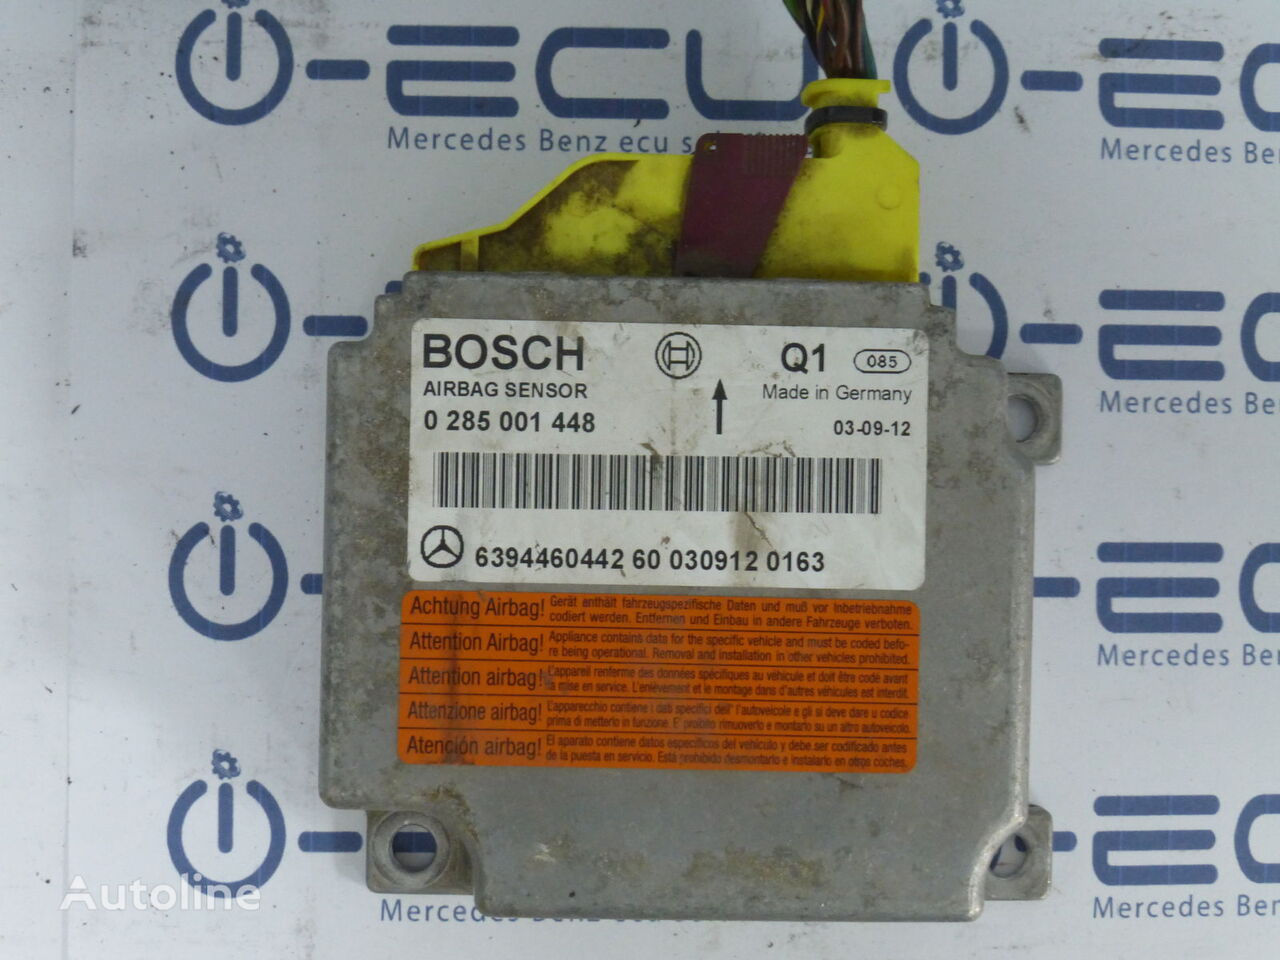 Bosch SRS AERHOSAKOS A 6394460442 vezérlőegység Mercedes-Benz VITO 639 automobil-hoz